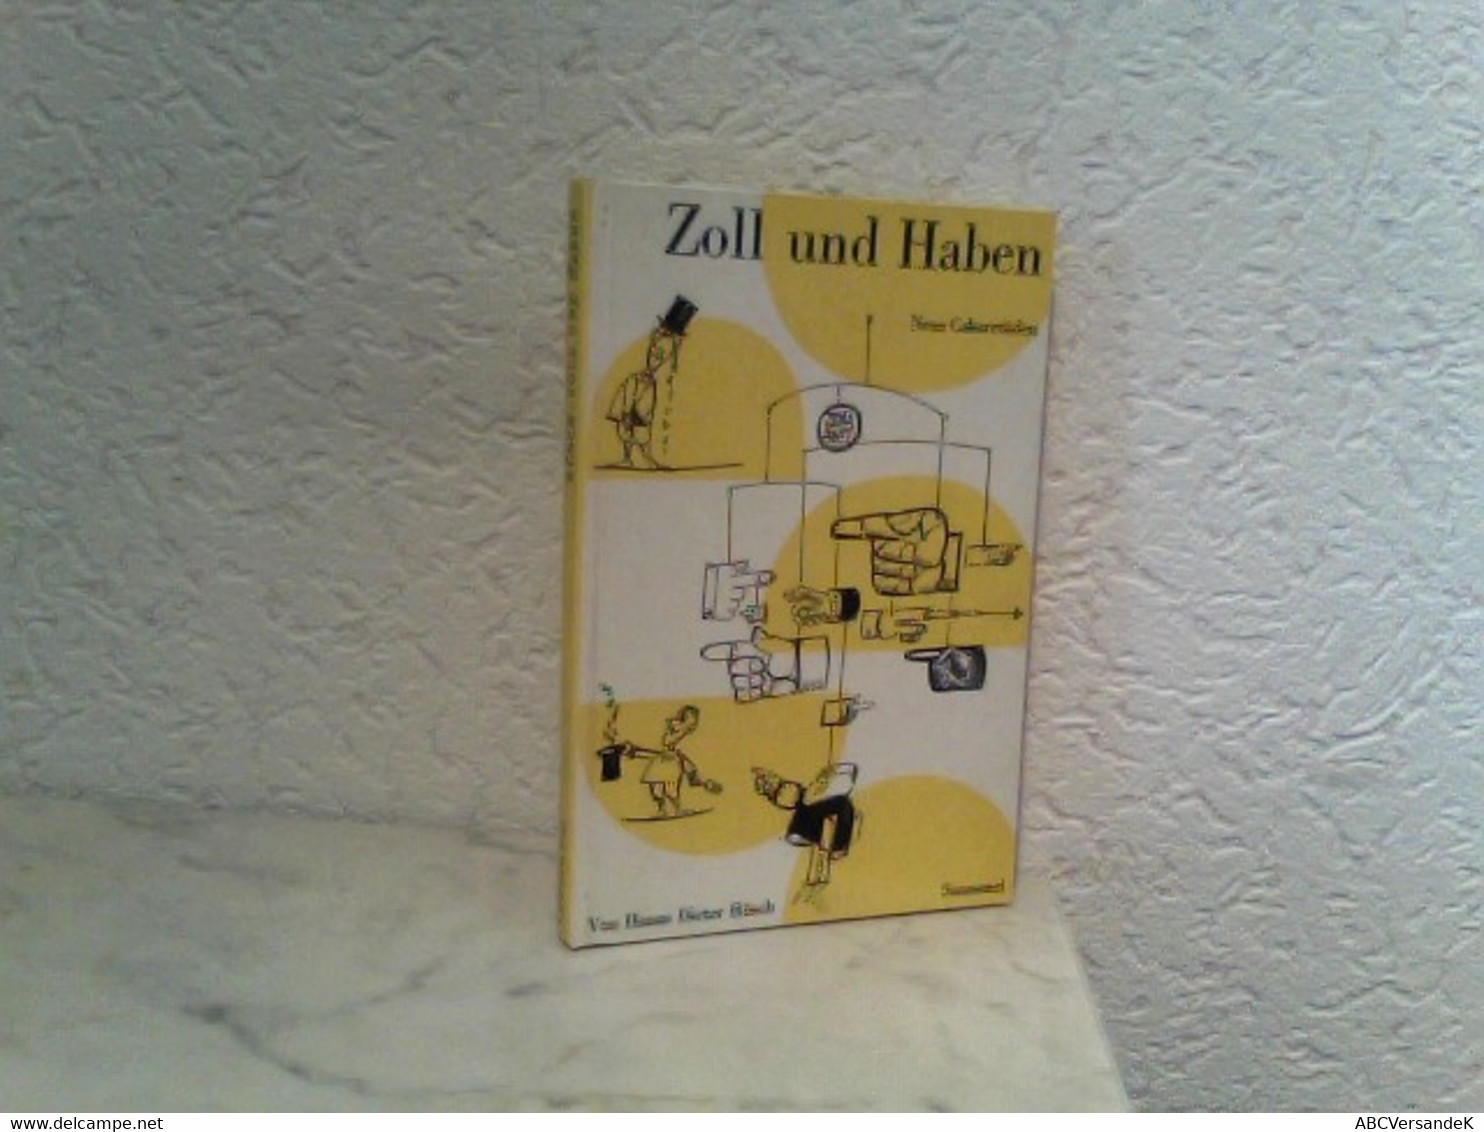 Zoll Und Haben - Eine Sammlung Weiterer Cabaretüden - Humor